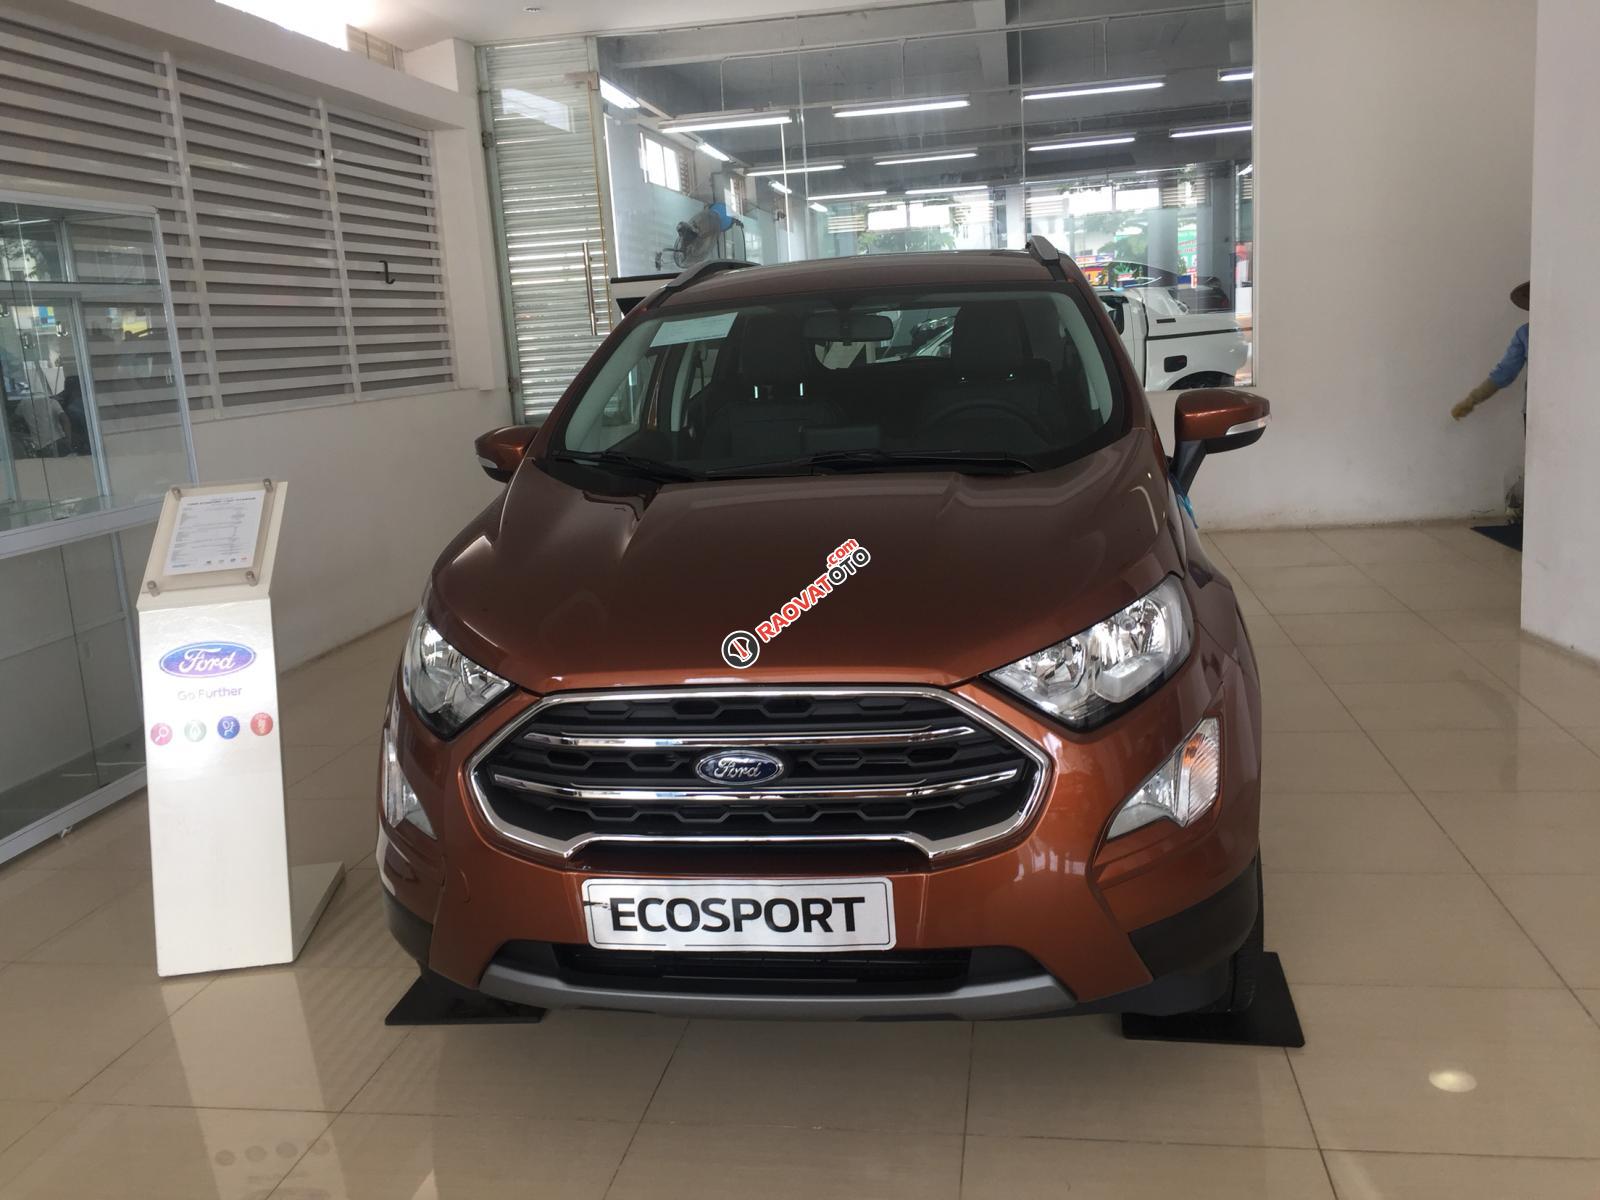 Bán Ford Ecosport 1.5 Titanium 2019 màu đỏ đồng, giảm 53tr, tặng bảo hiểm thân vỏ-8